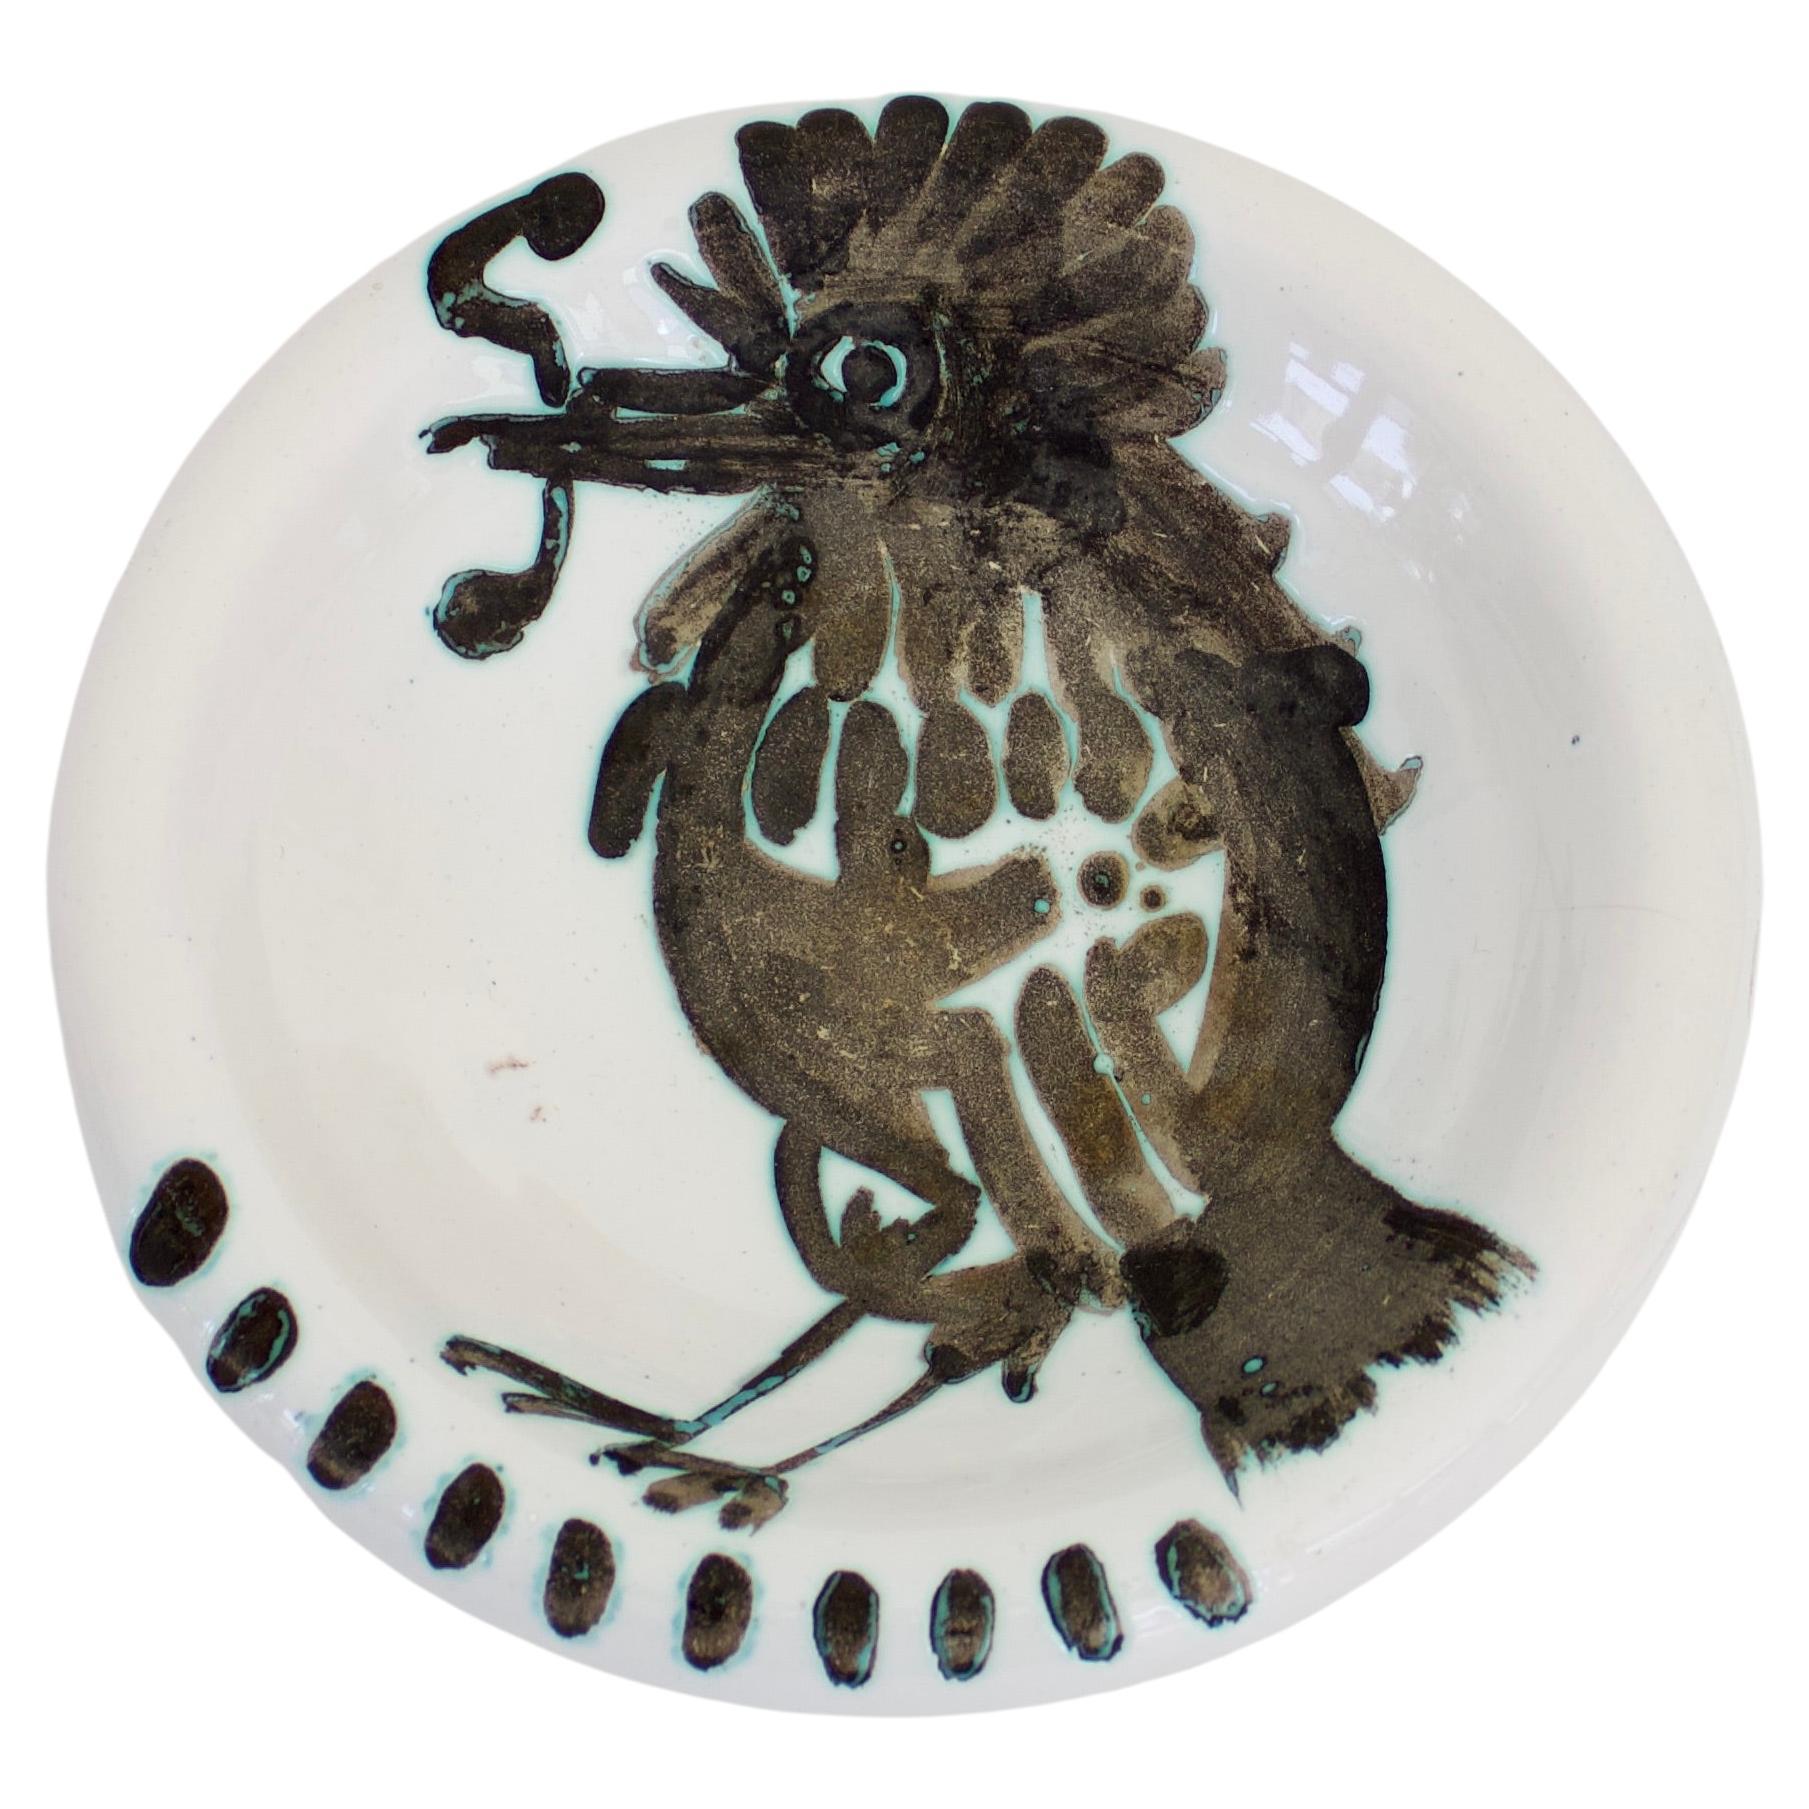 Pablo Picasso Ceramic Dish Editions Picasso Madoura with Bird Motif, circa 1952